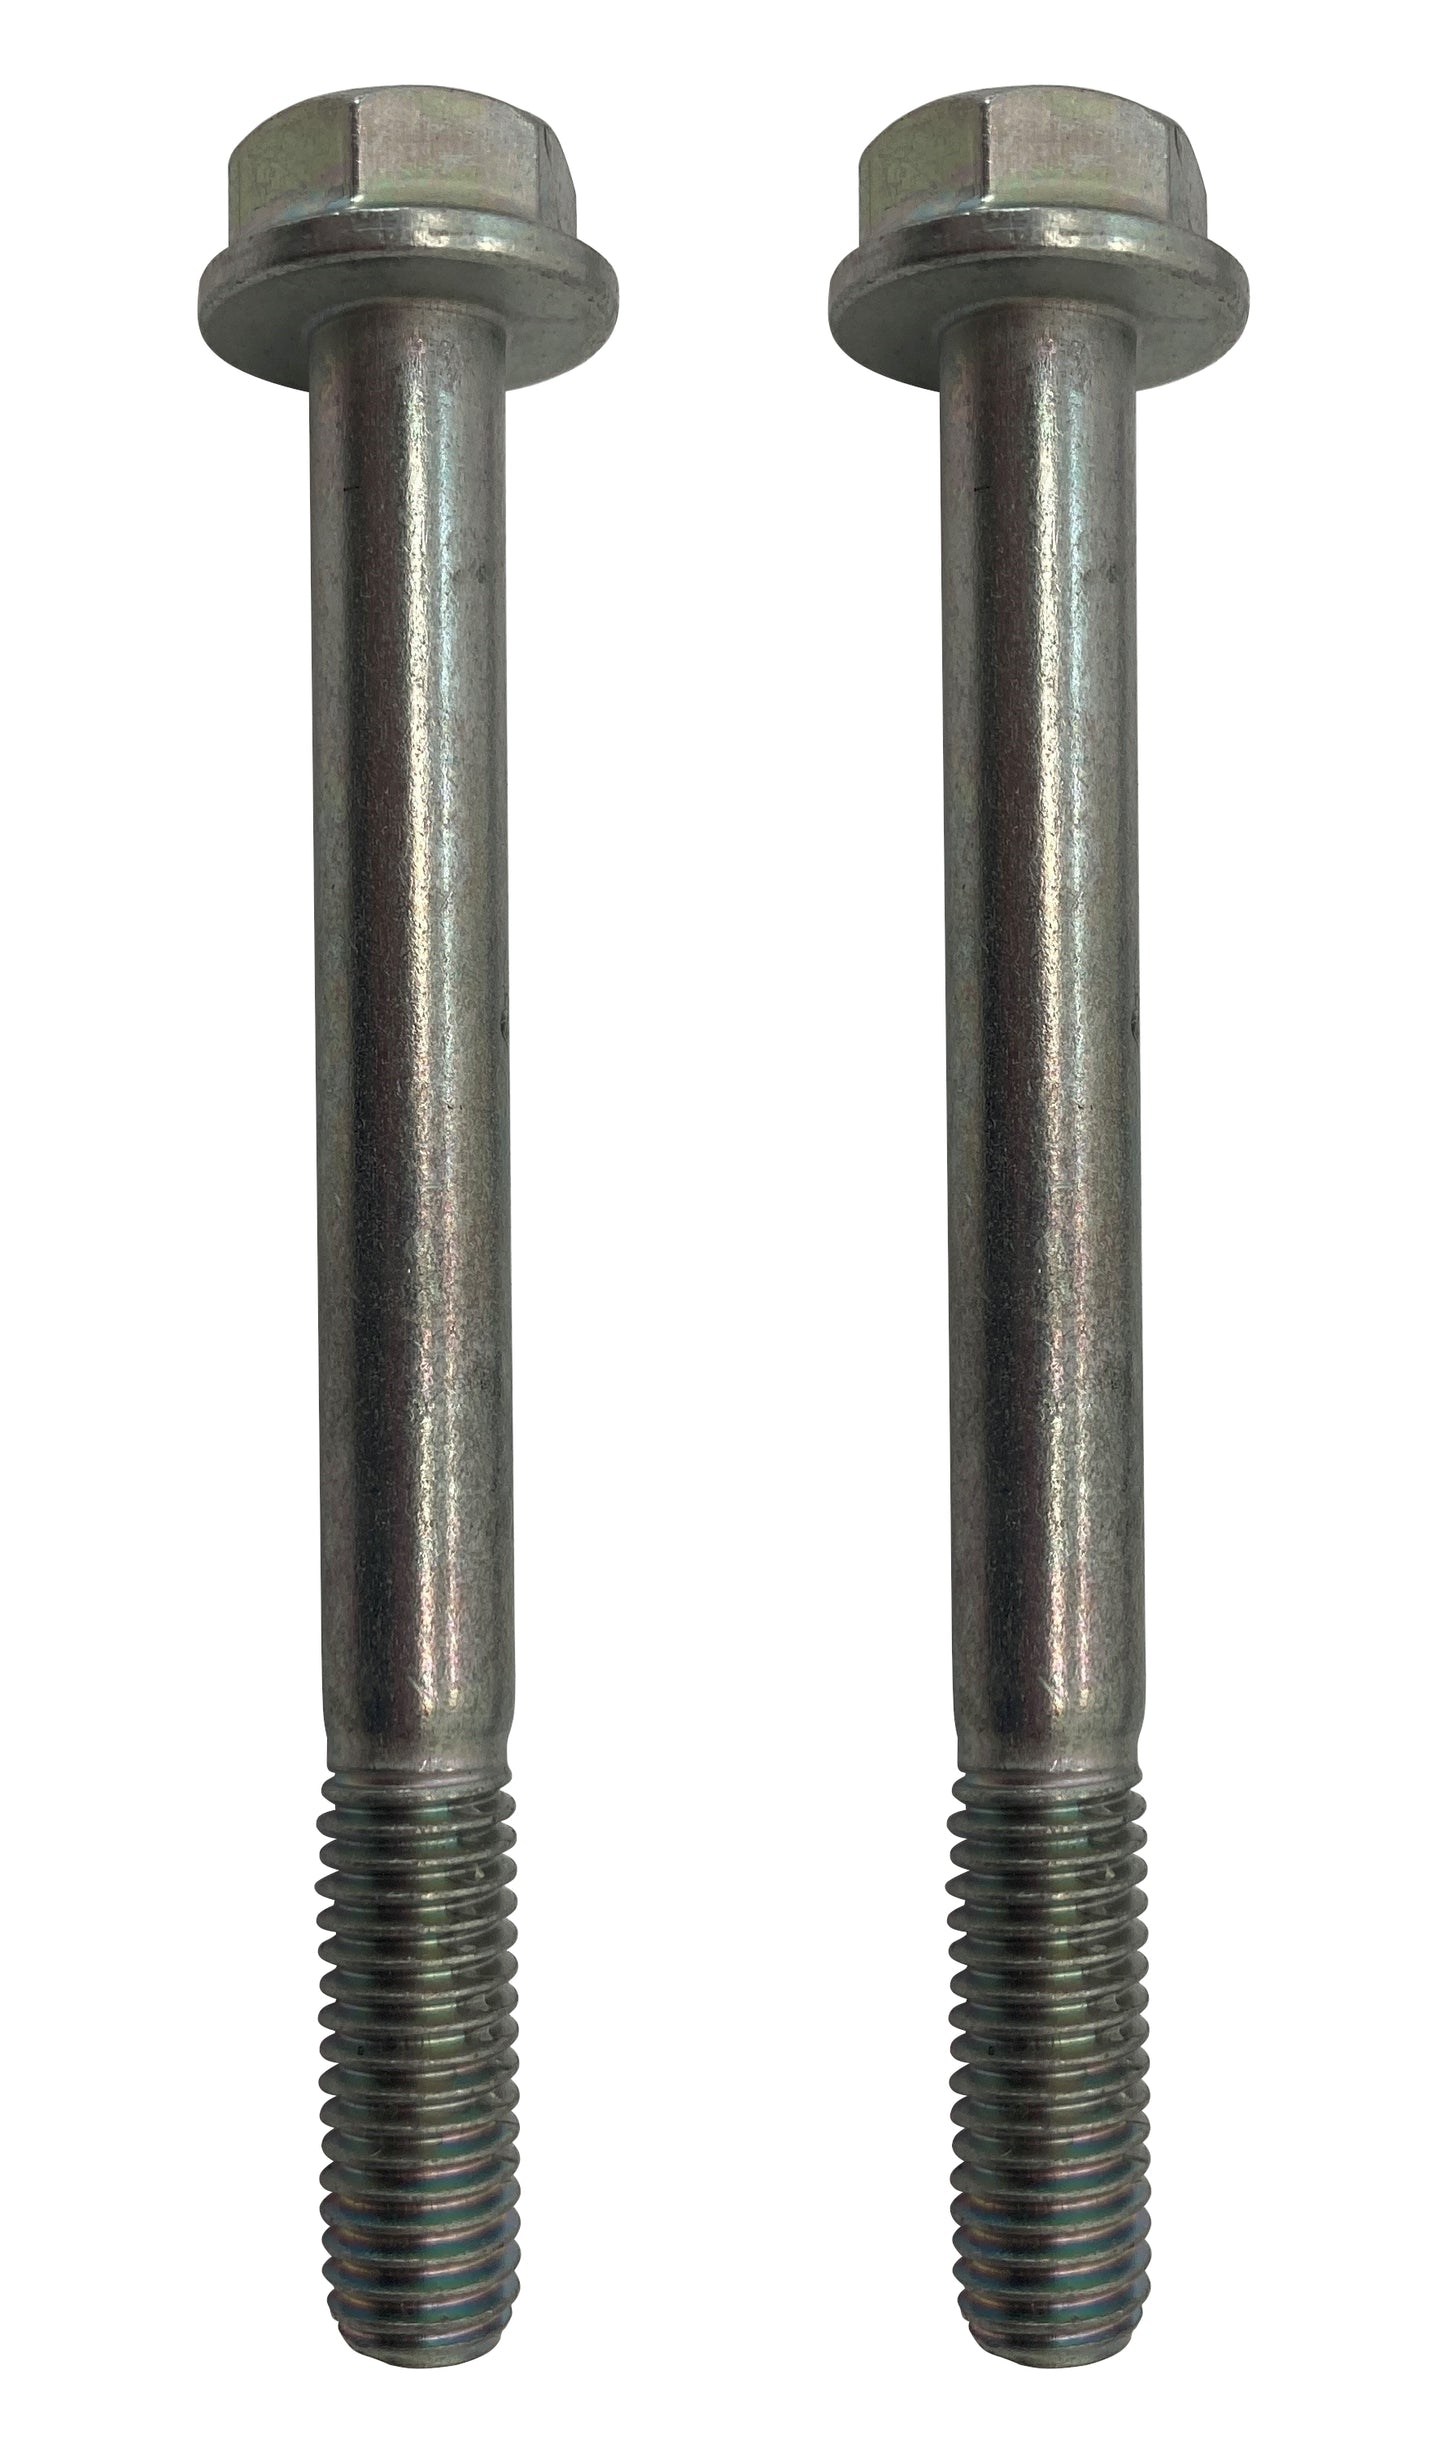 John Deere Original Equipment Screw (Pack of 2) - 19M8039